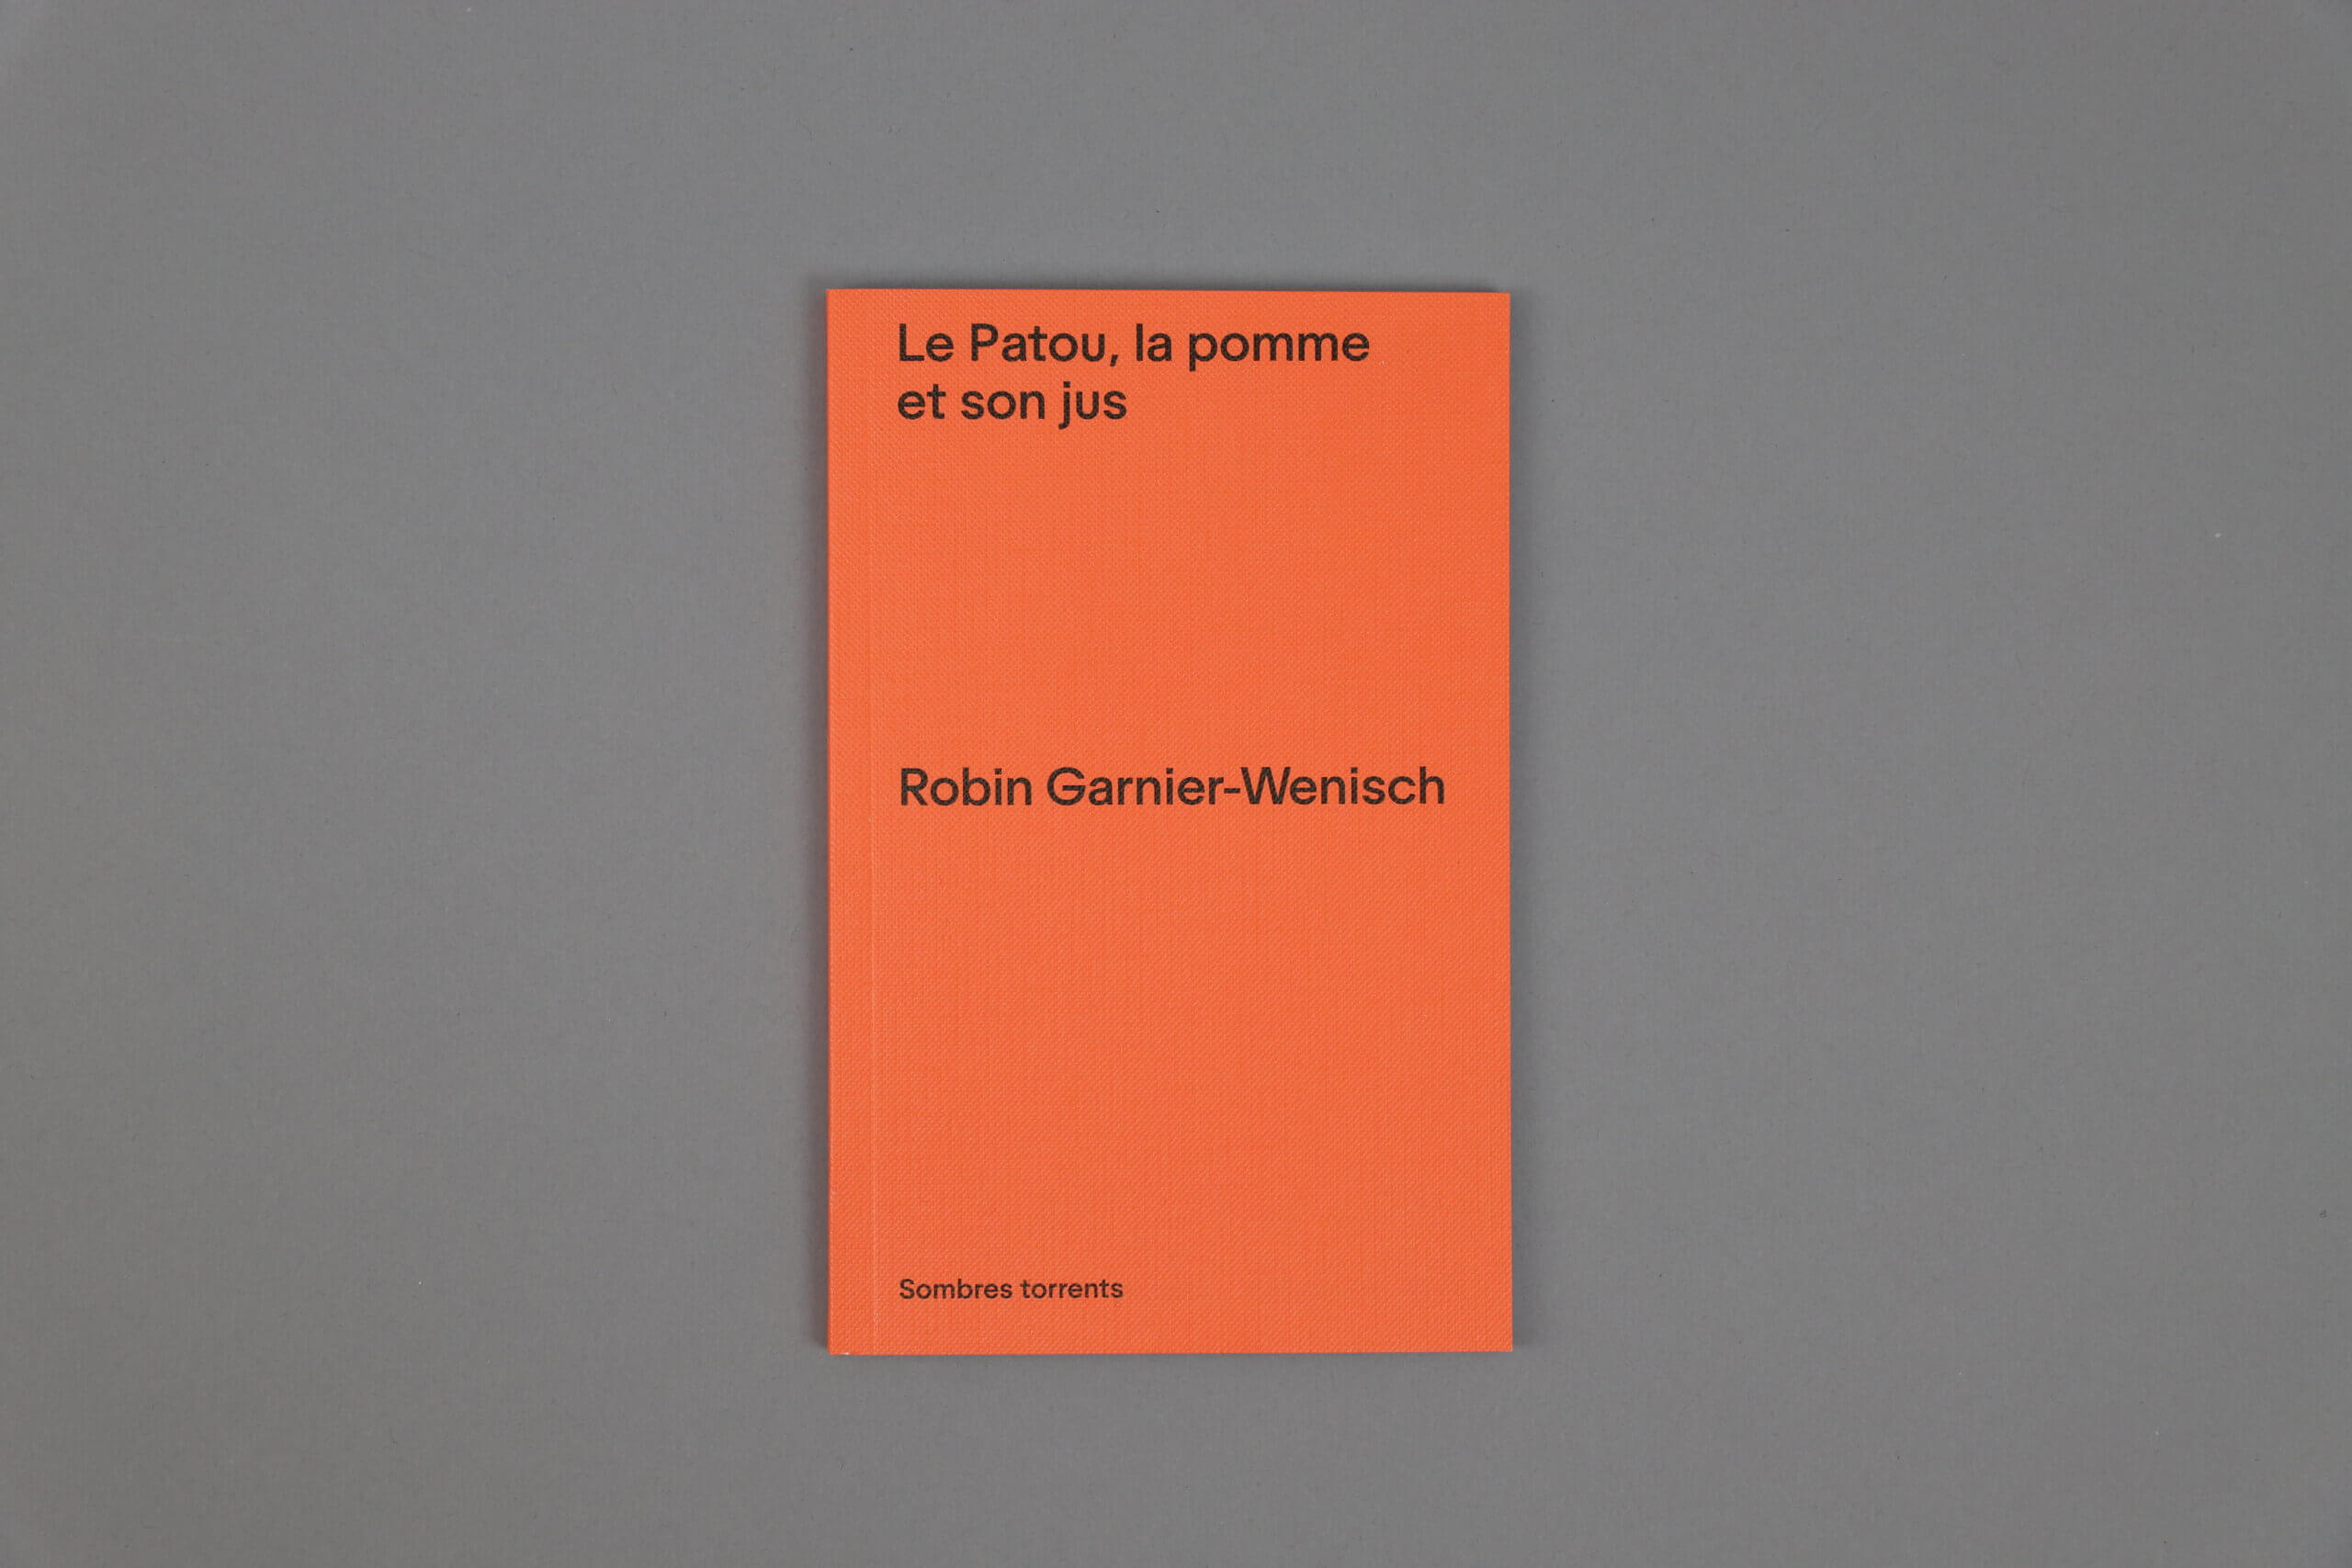 Le-patou-la-pomme-et-son-jus-Robin-Garnier-Wenisch-Sombre-Torrents-cover